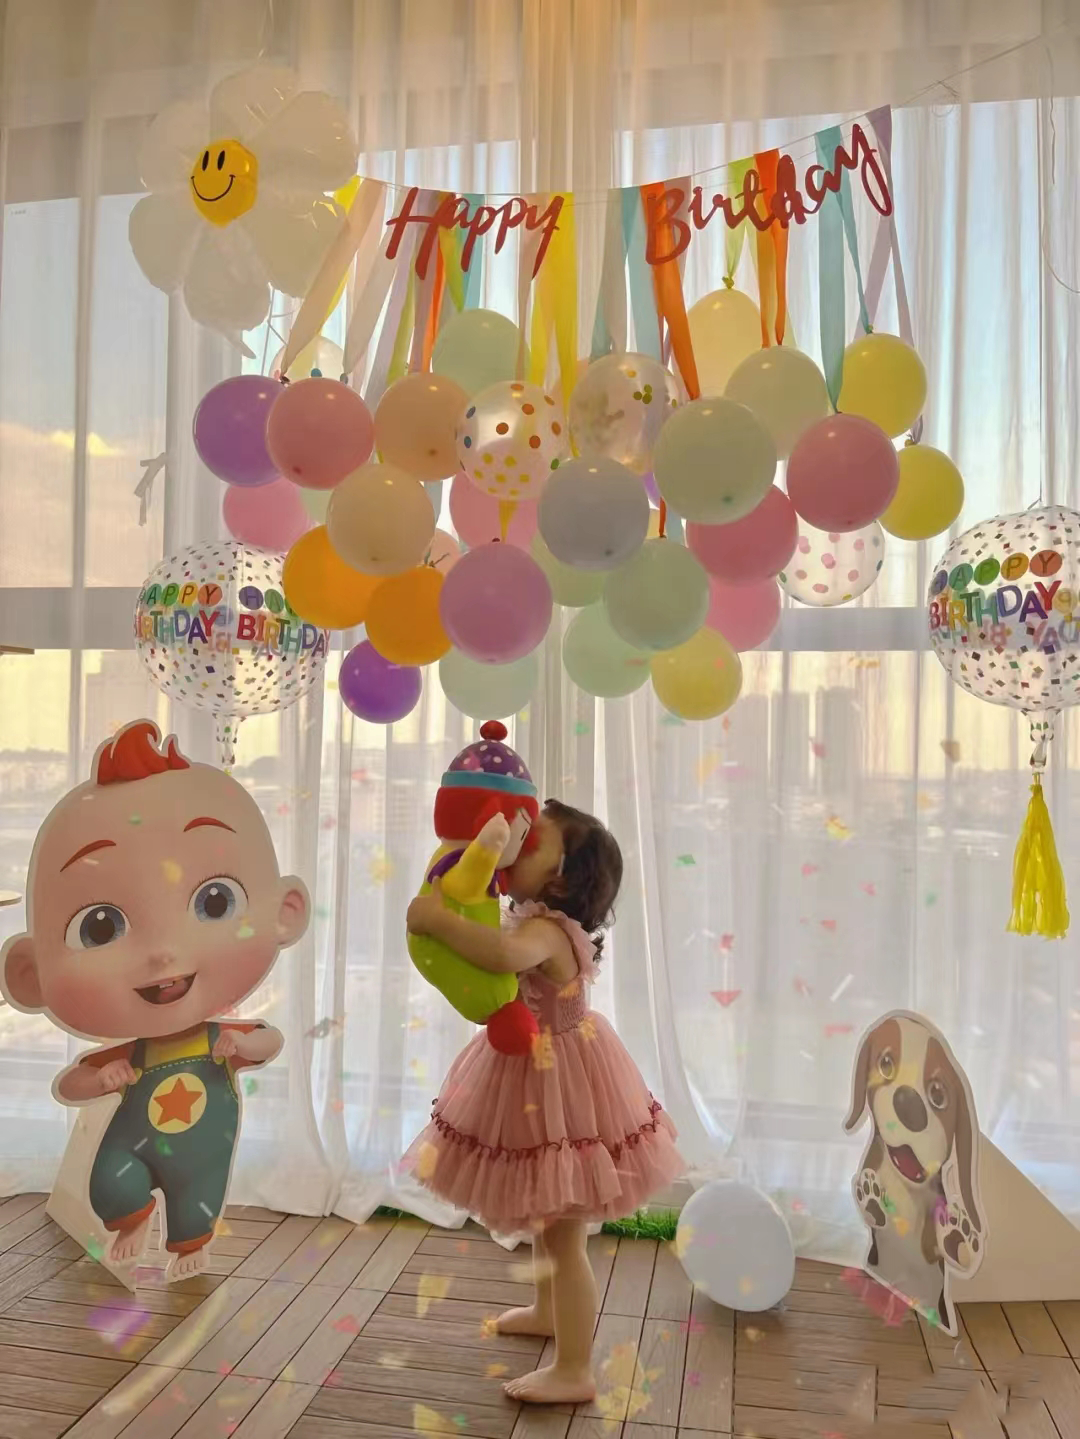 超级jiojio主题kt板小朋友生日装饰男孩女孩卡通气球背景墙套餐